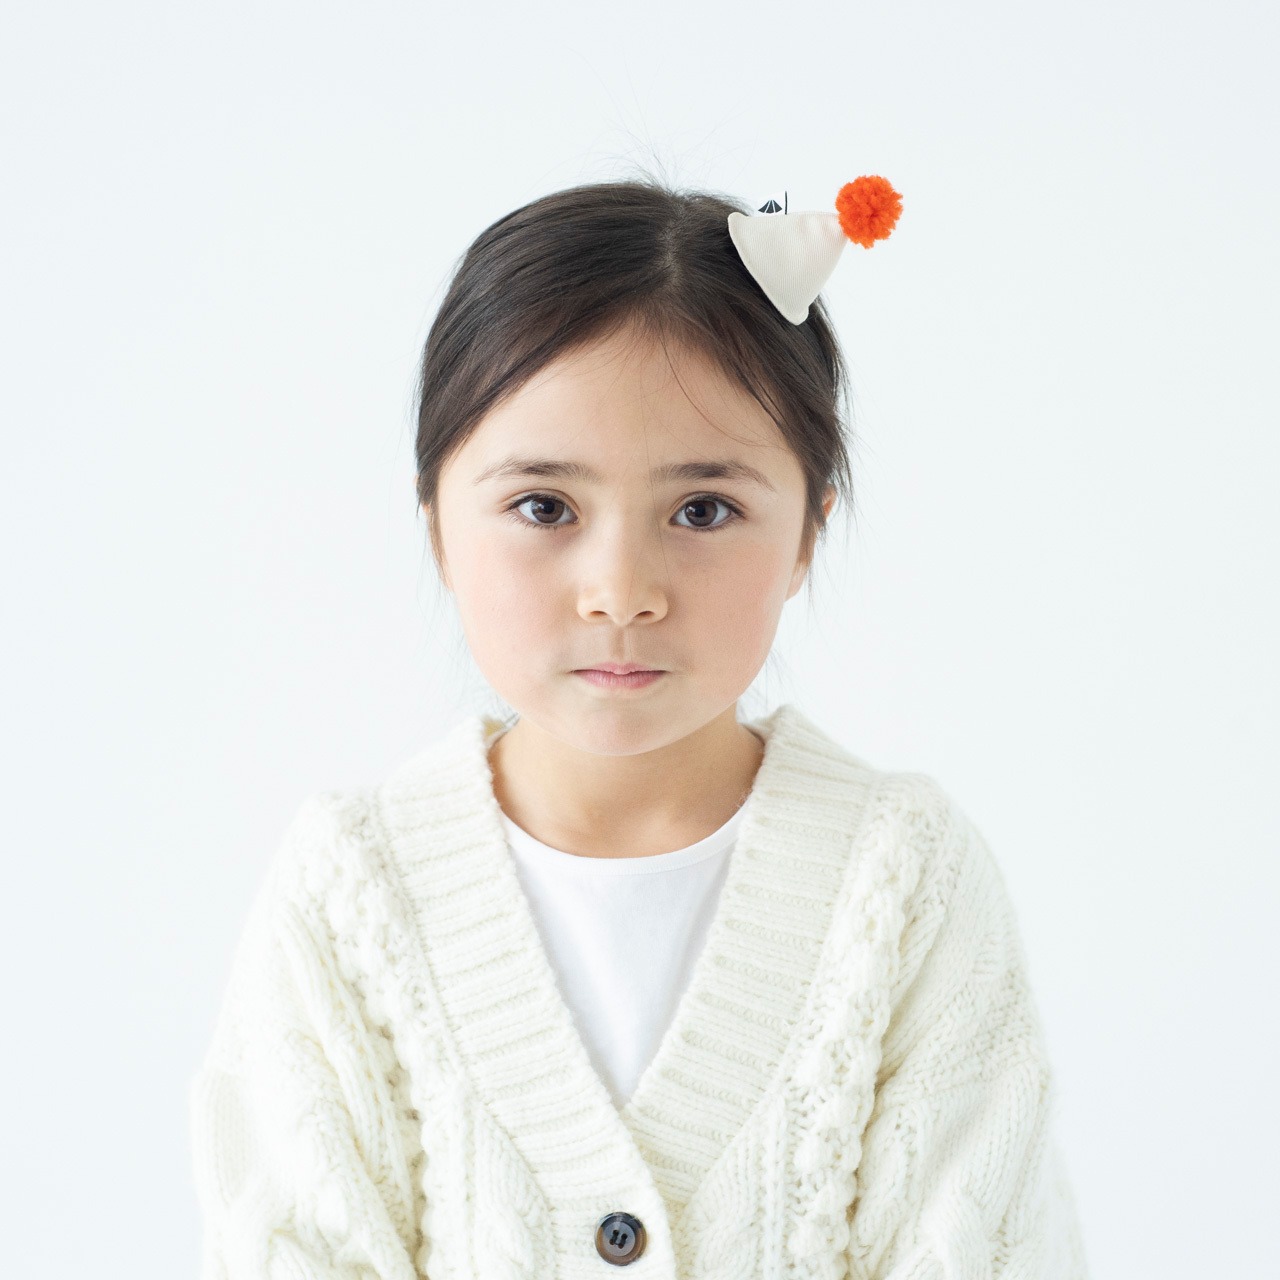 ヘアピン 【ぼうしアイボリー】ブランド 子供 ヘアアクセサリー 女の子 男の子 日本製 キッズ ギフト